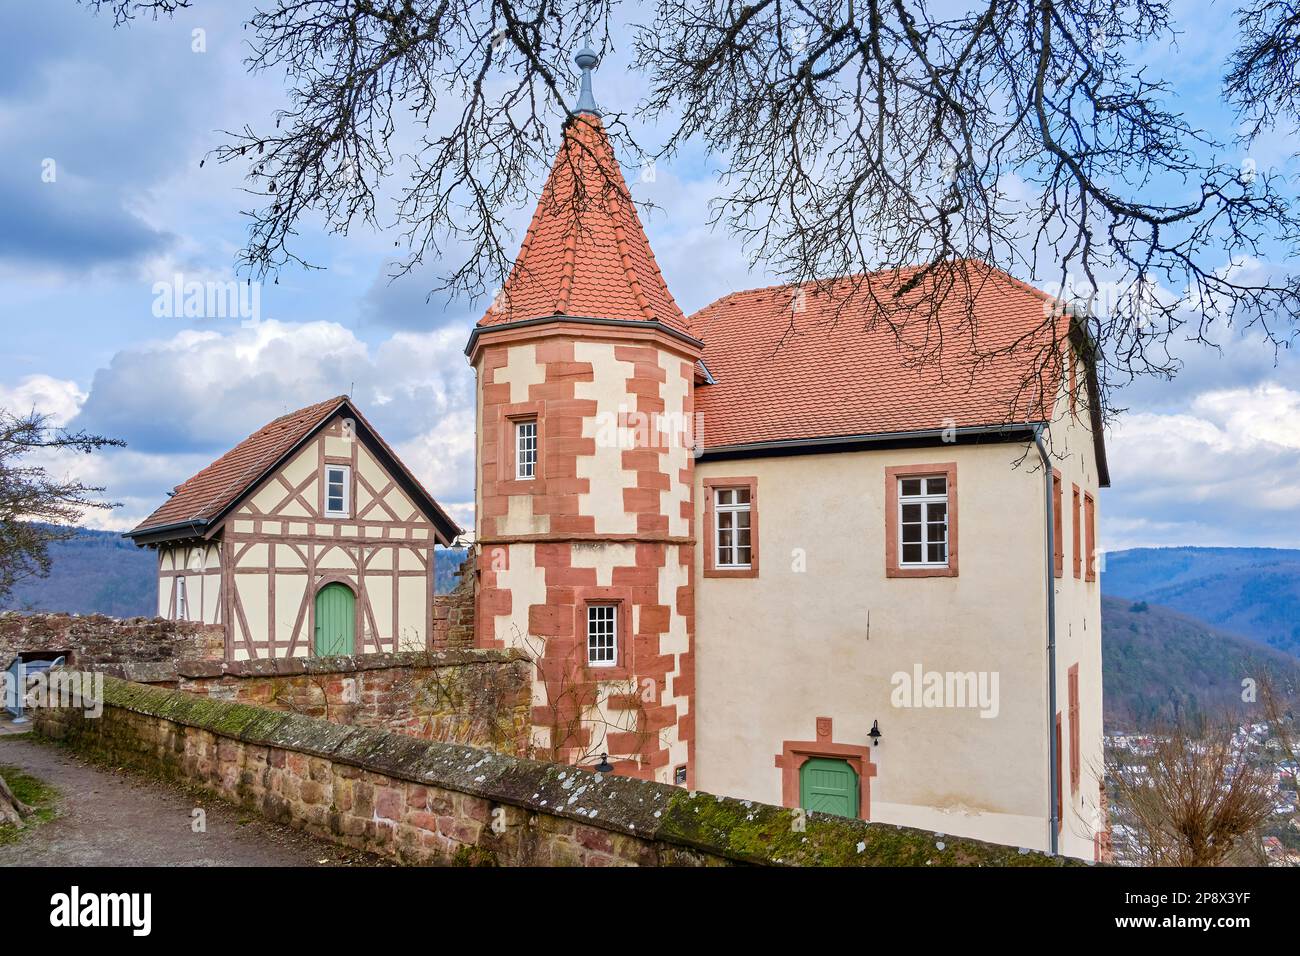 Historisches Kommandantenhaus und Turm von Schloss Dilsberg, Dilsberg, Neckargemund, Baden-Wurttemberg, Deutschland, Europa. Stockfoto